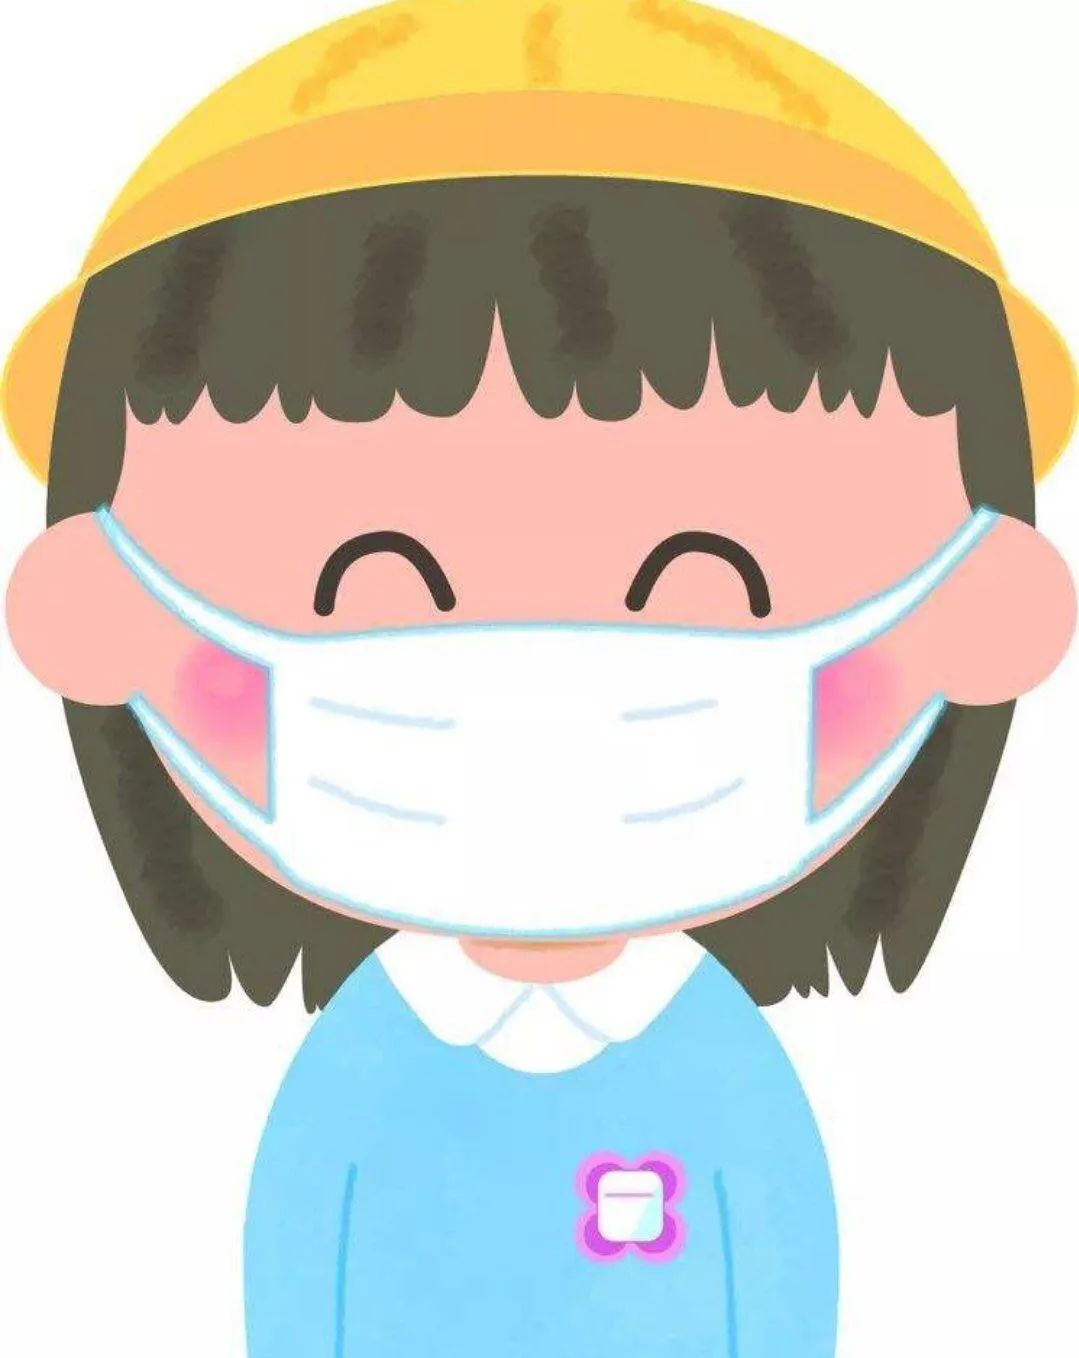 【预防新型冠状病毒】戴口罩儿歌一华夏未来华明幼儿园